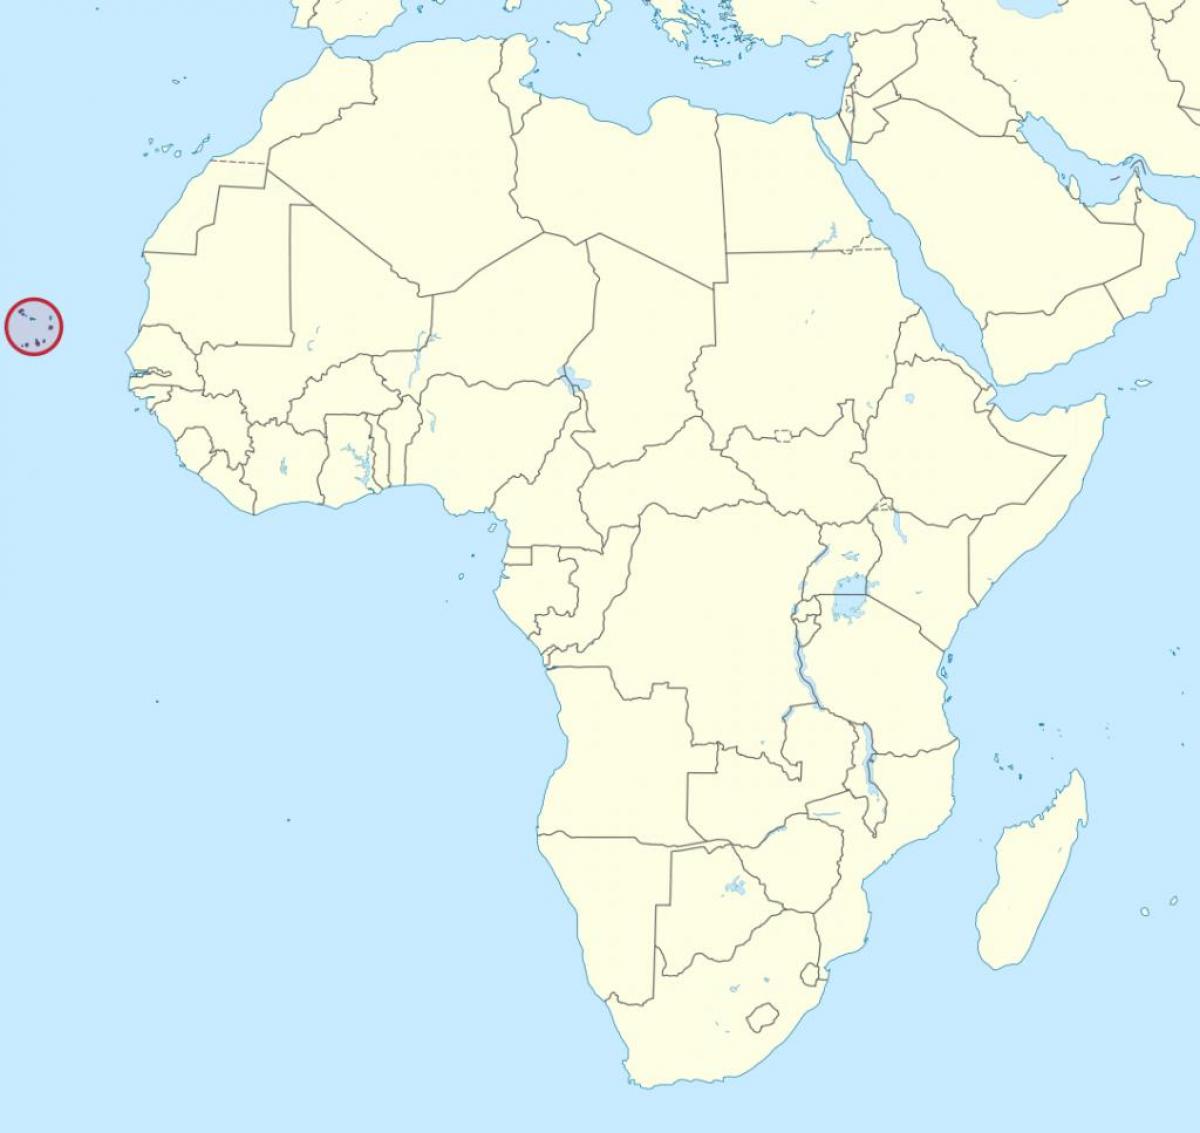 Կաբո-Վերդե քարտեզի վրա Աֆրիկայի